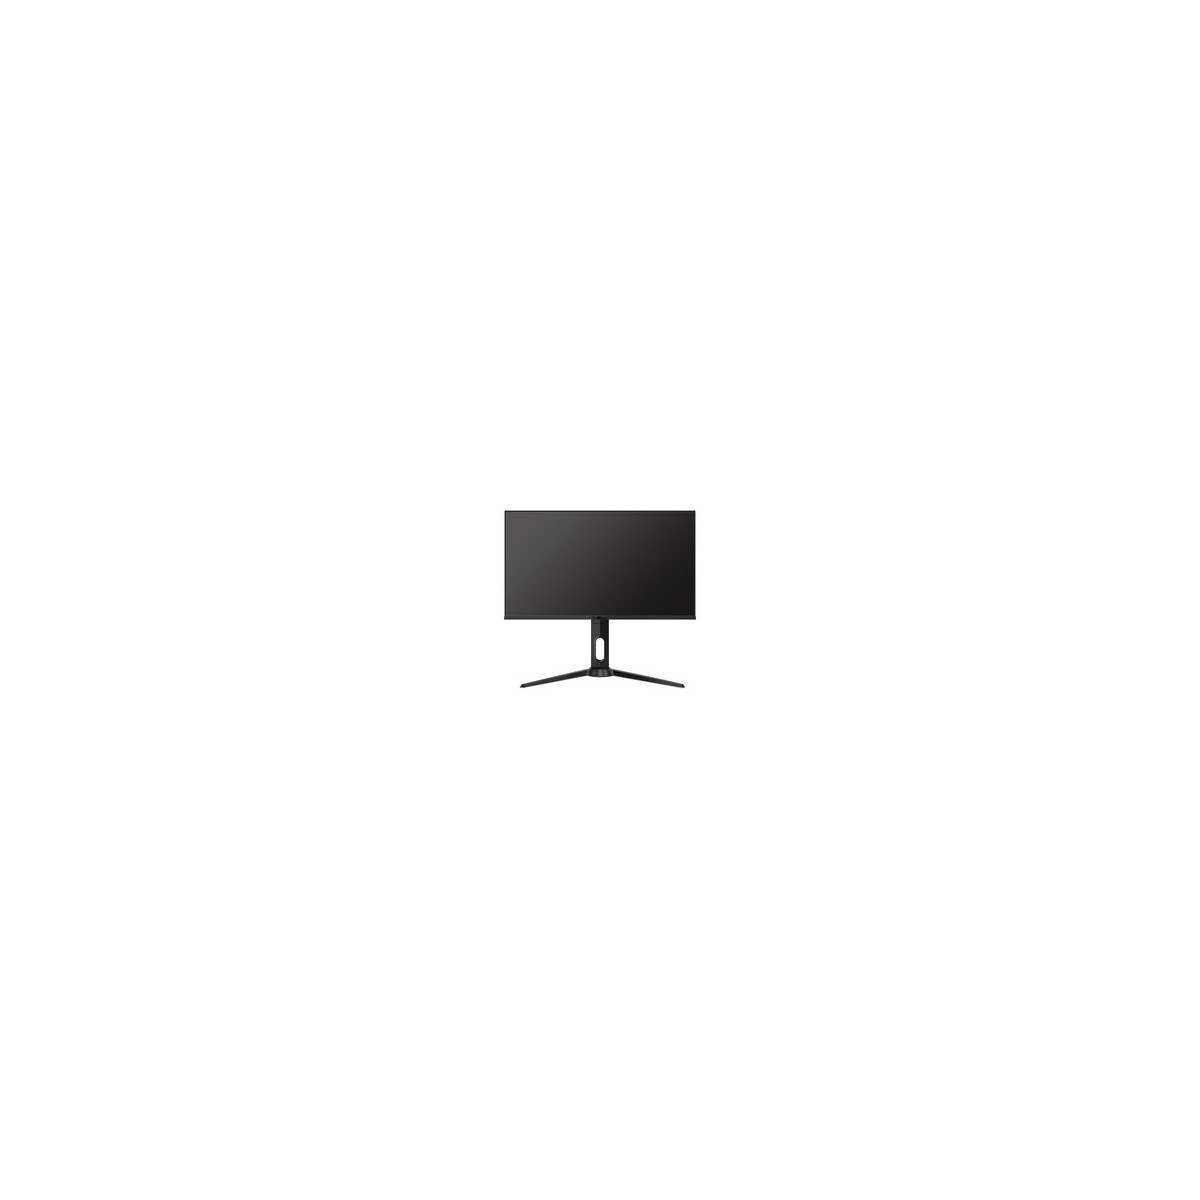 ProXtend 27 Monitor 16 9 WQHD 2560x1440 - 68.6 cm (27) - 2560 x 1440 pixels - UltraWide Quad HD - LED - 1 ms - Black